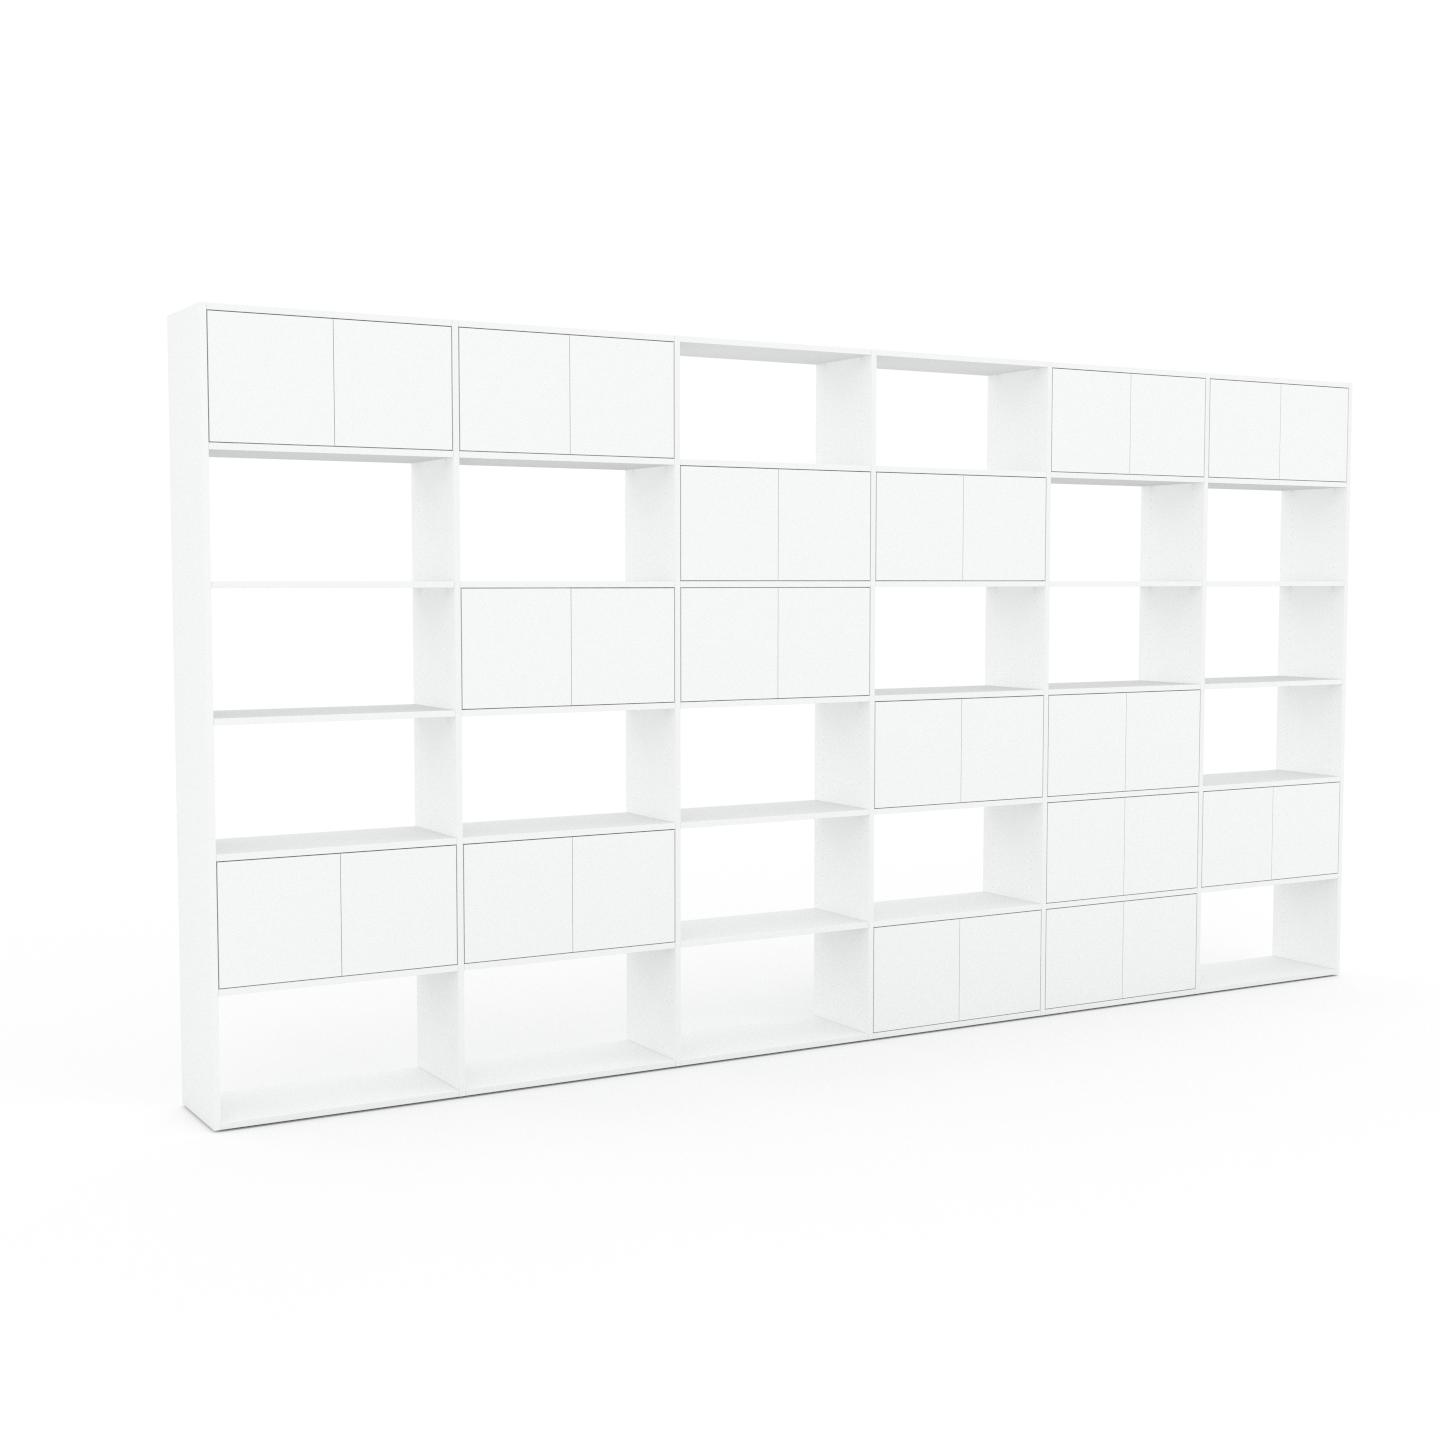 MYCS Wohnwand Weiß - Individuelle Designer-Regalwand: Türen in Weiß - Hochwertige Materialien - 450 x 233 x 35 cm, Konfigurator